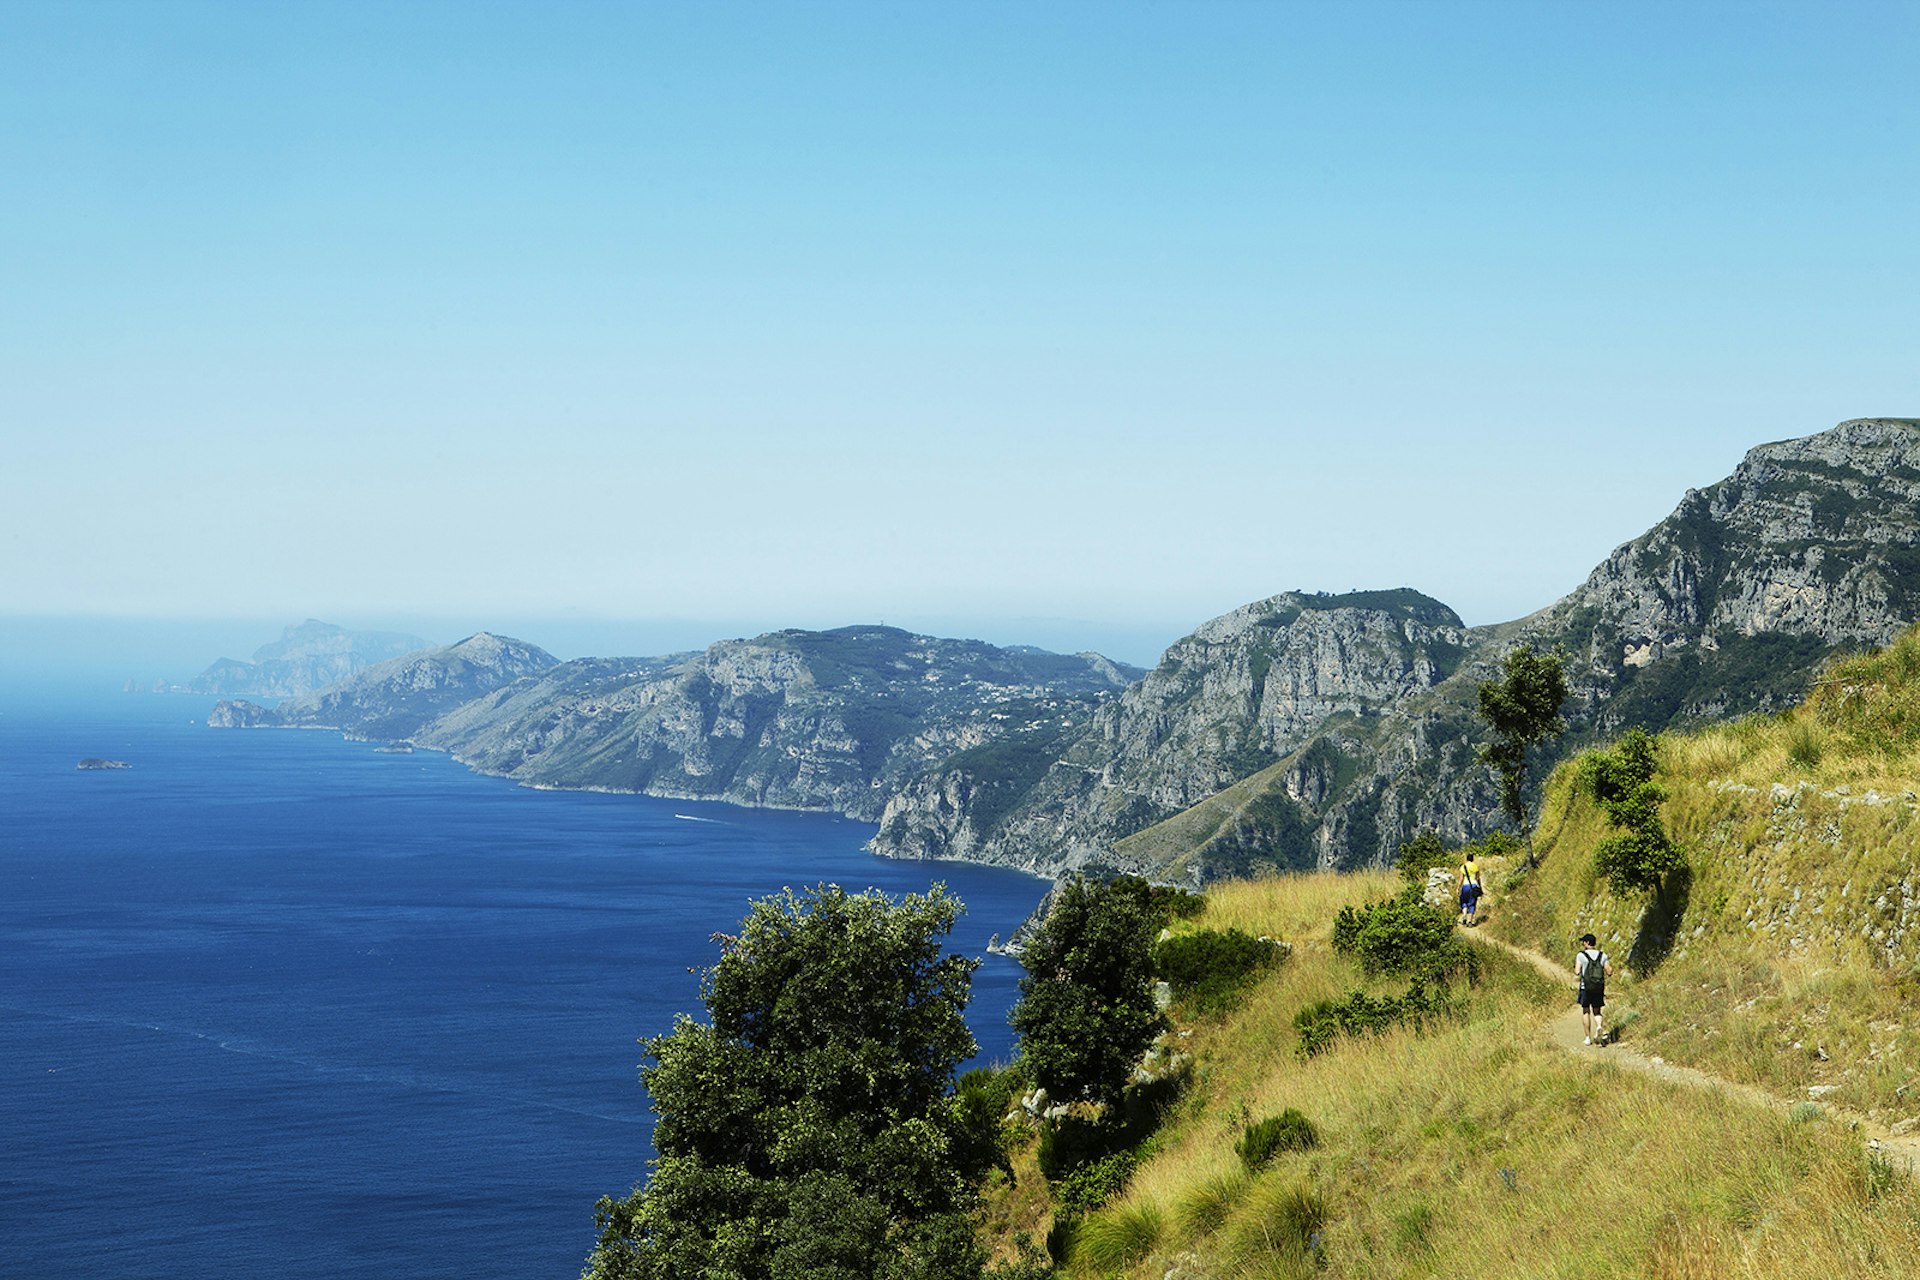 The Sentiero Degli Dei (Path of the Gods) overlooking Positano and Isle of Capri